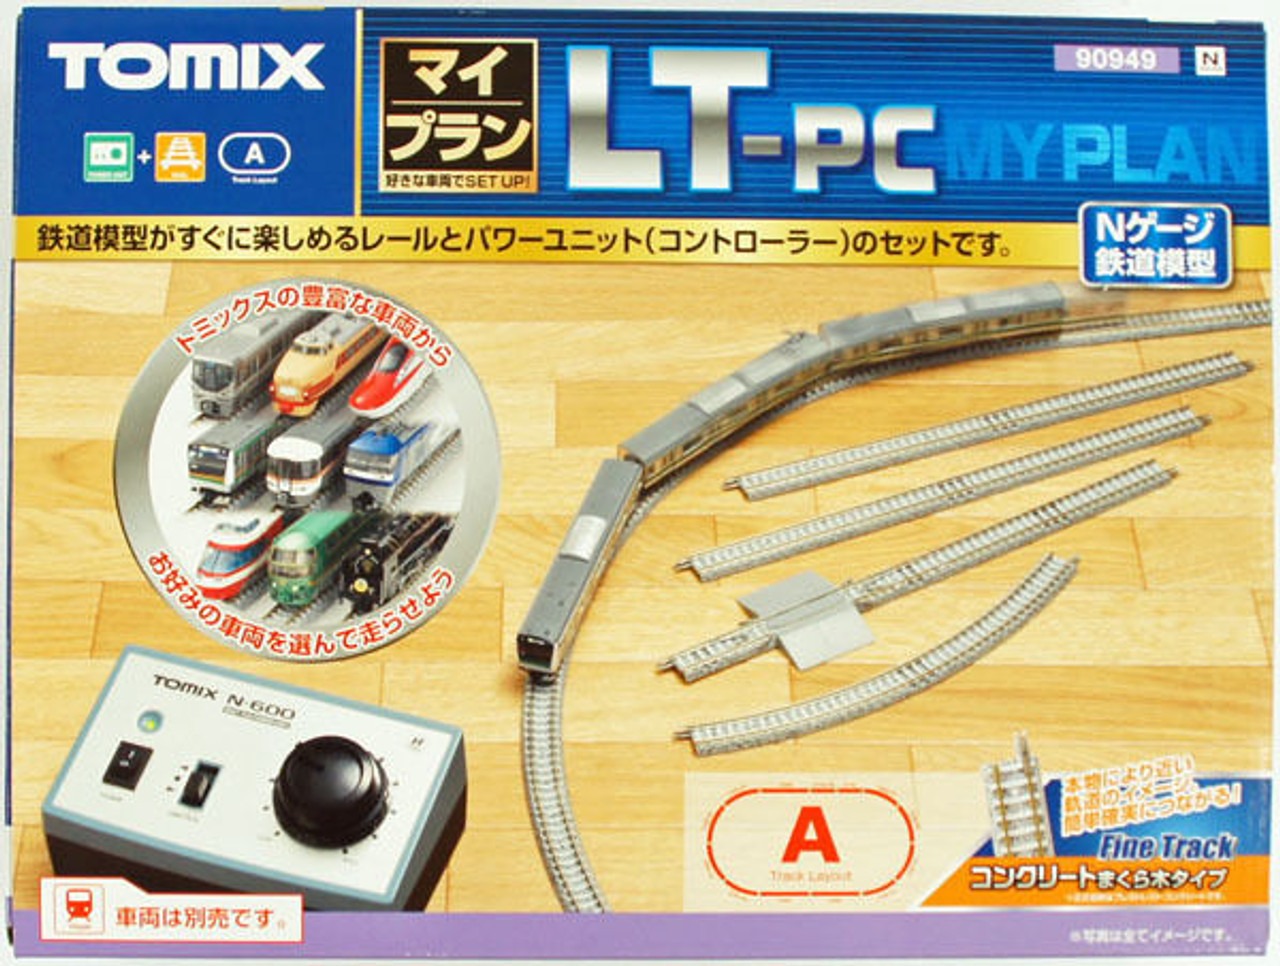 トミーテック TOMIX Nゲージ マイプラン DT-PC F 90940 鉄道模型 